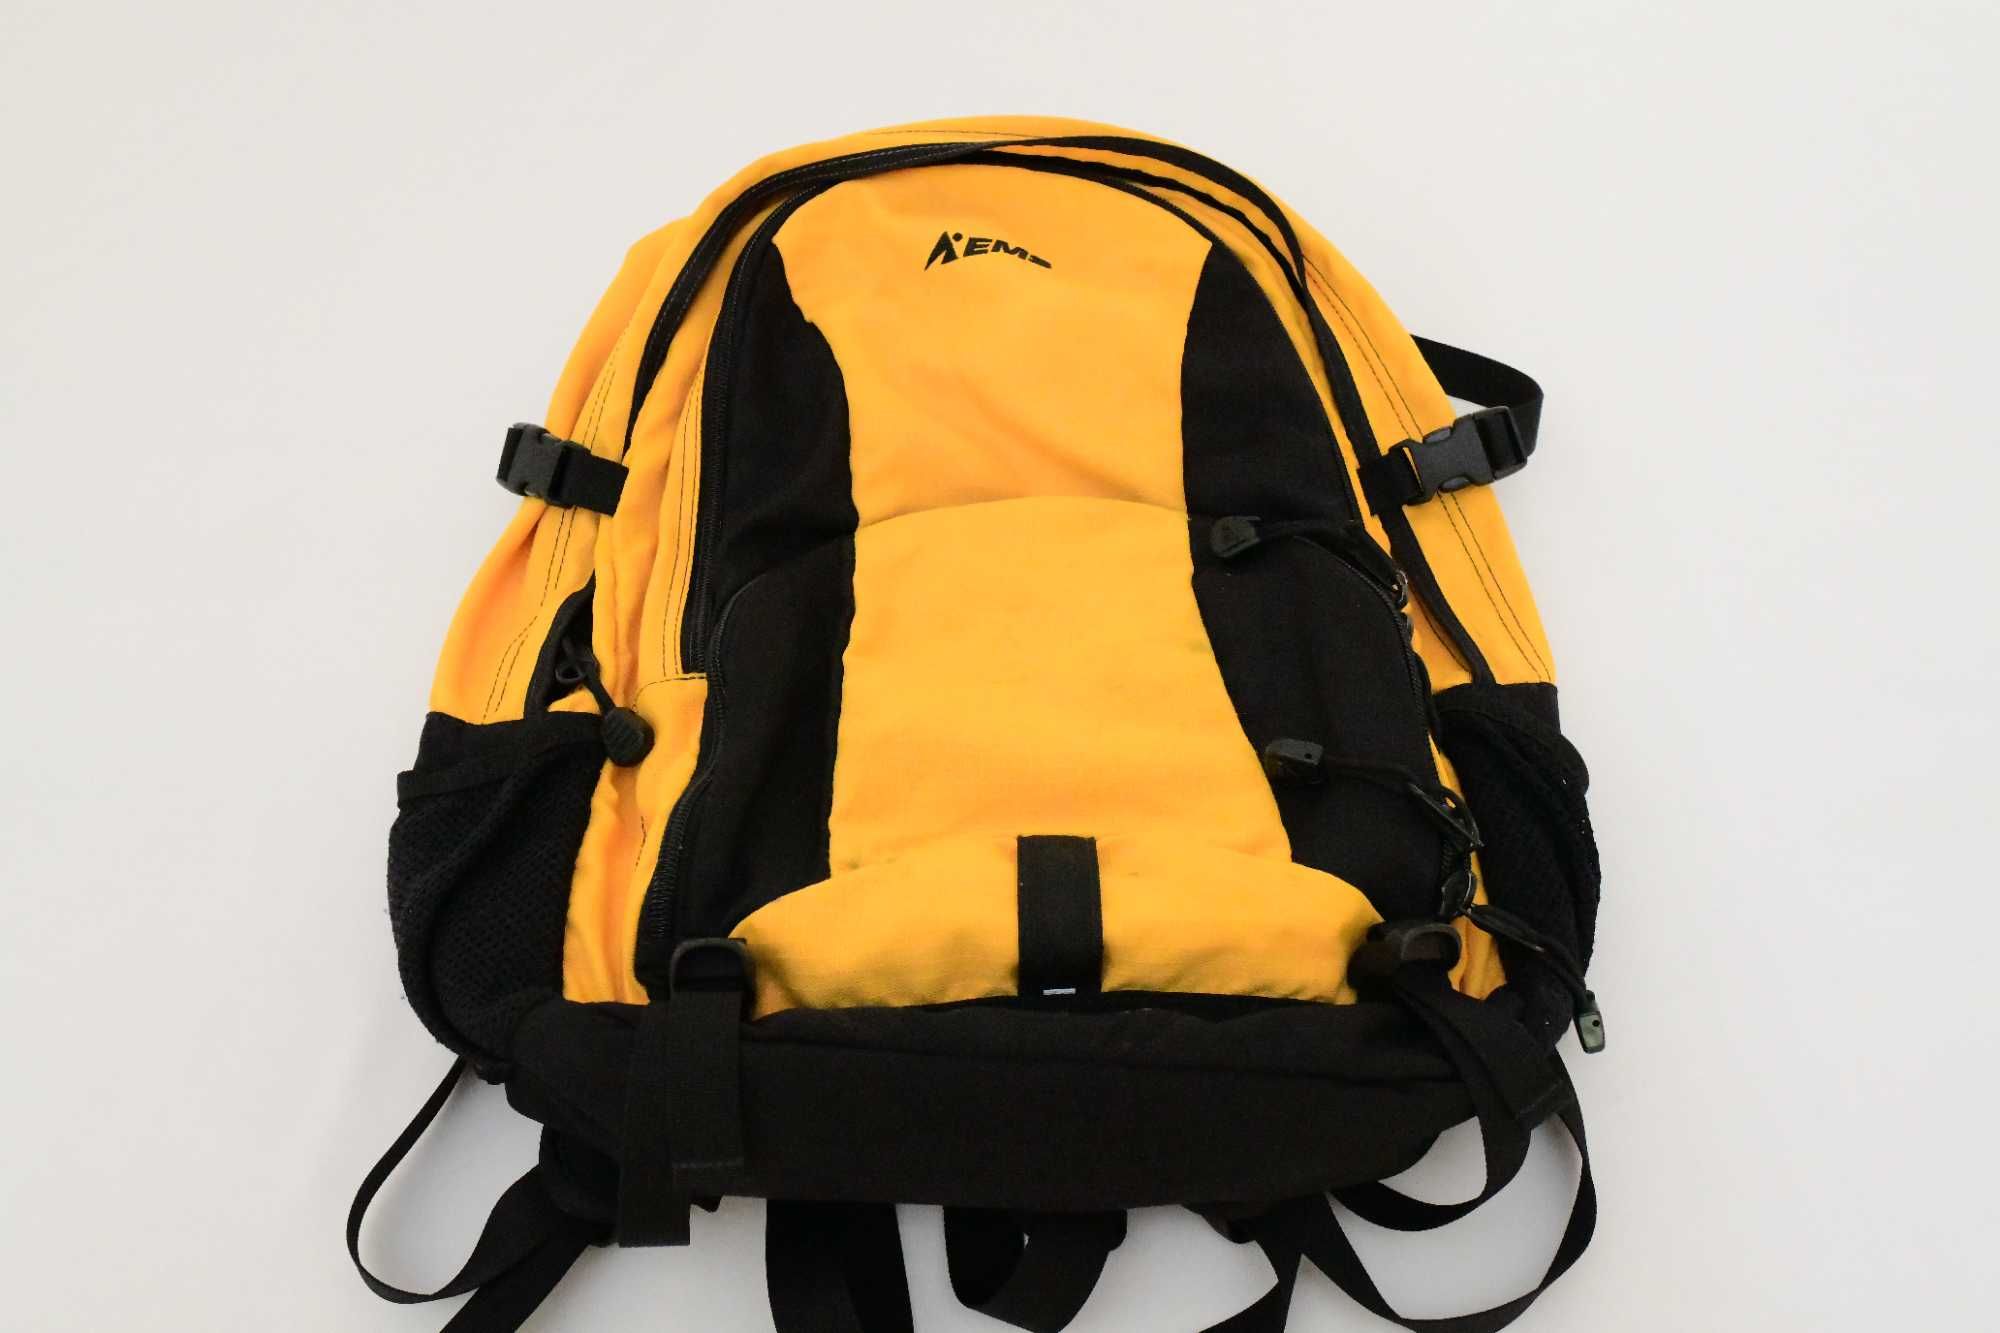 Plecak miejski (amerykański) żółty firmy EMS